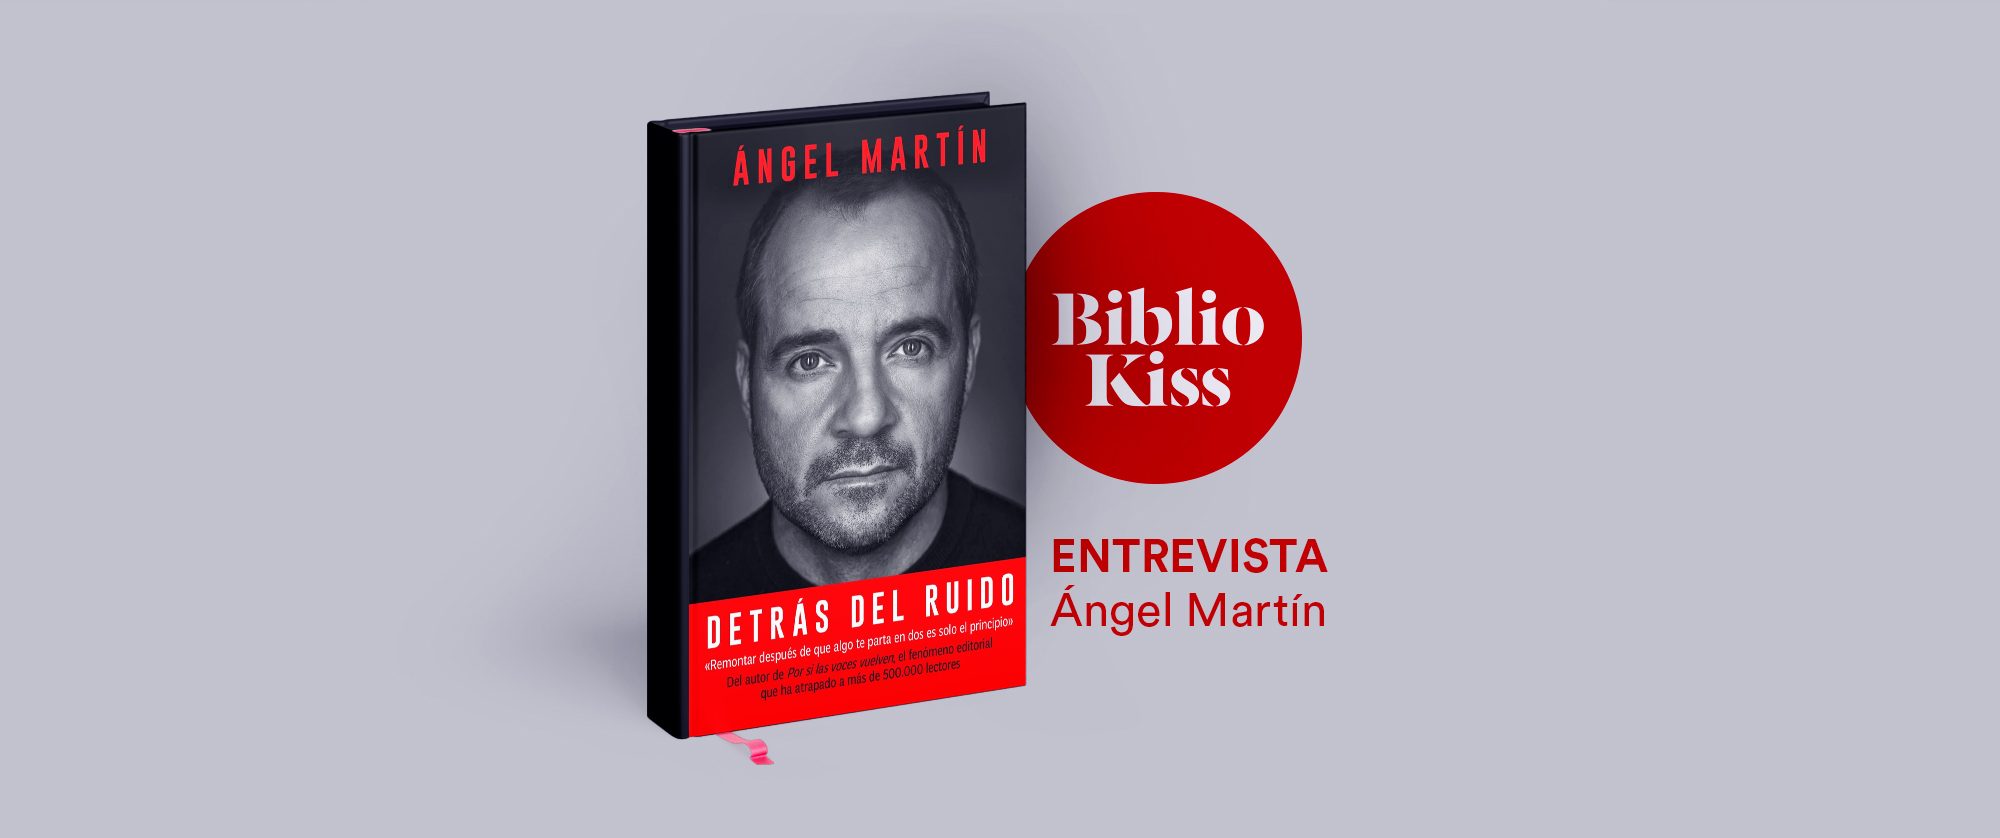 Detrás del ruido', el nuevo libro de Ángel Martín para mantener la cordura